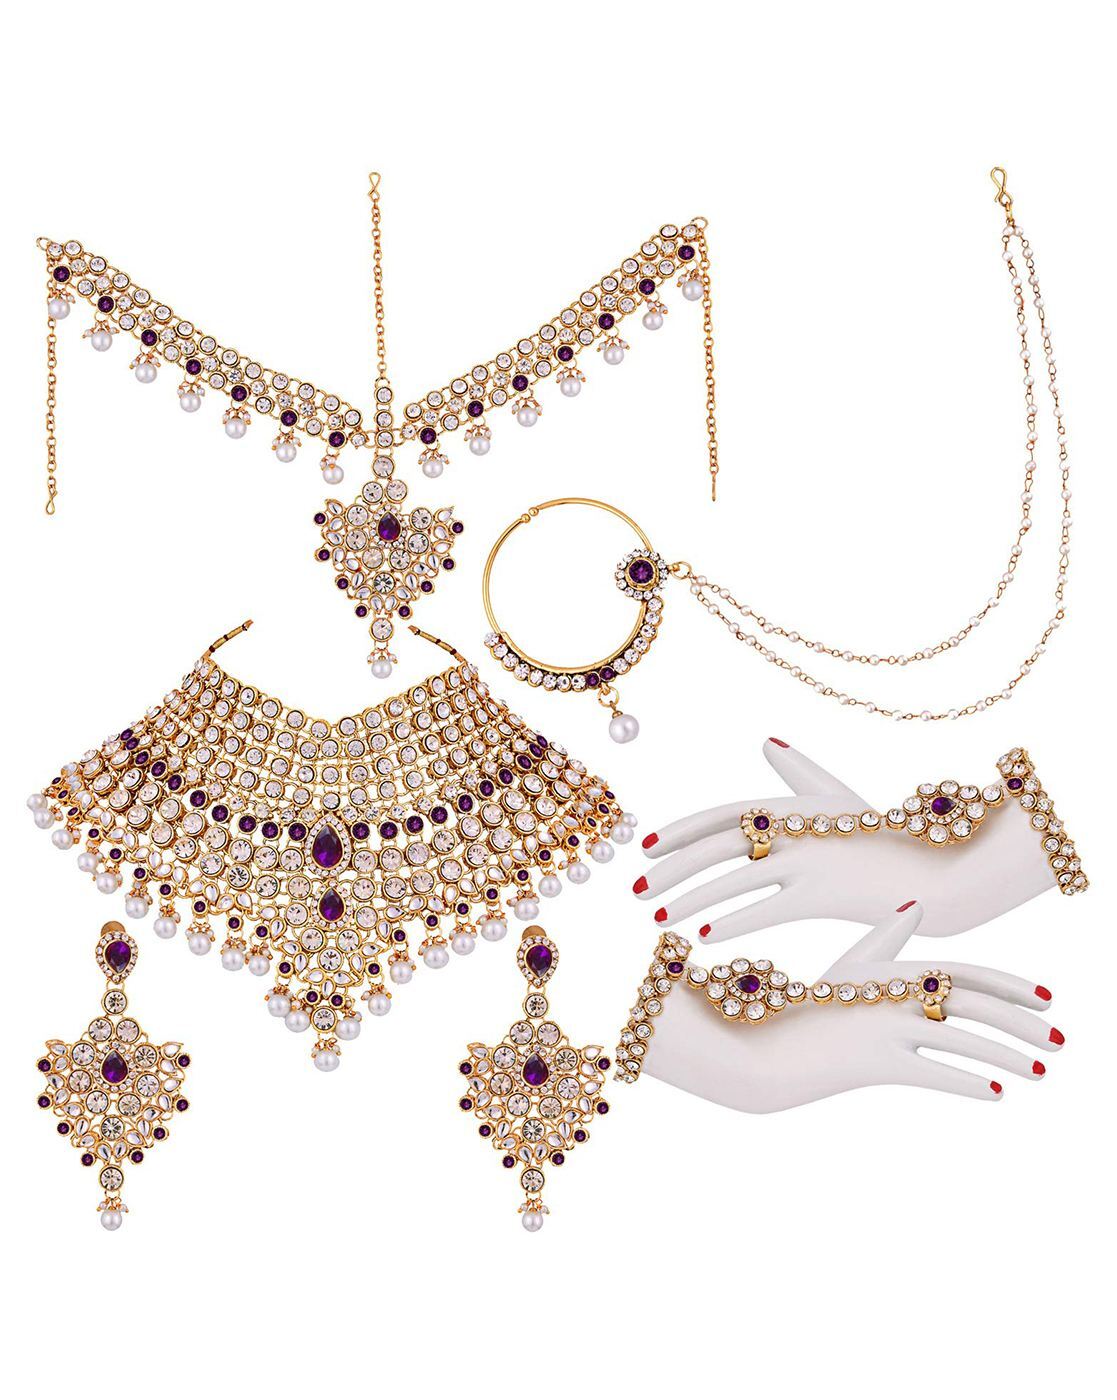 4 piece Silver Purple Jewellery Set | Purple jewelry set, Purple jewelry,  Purple wedding jewelry